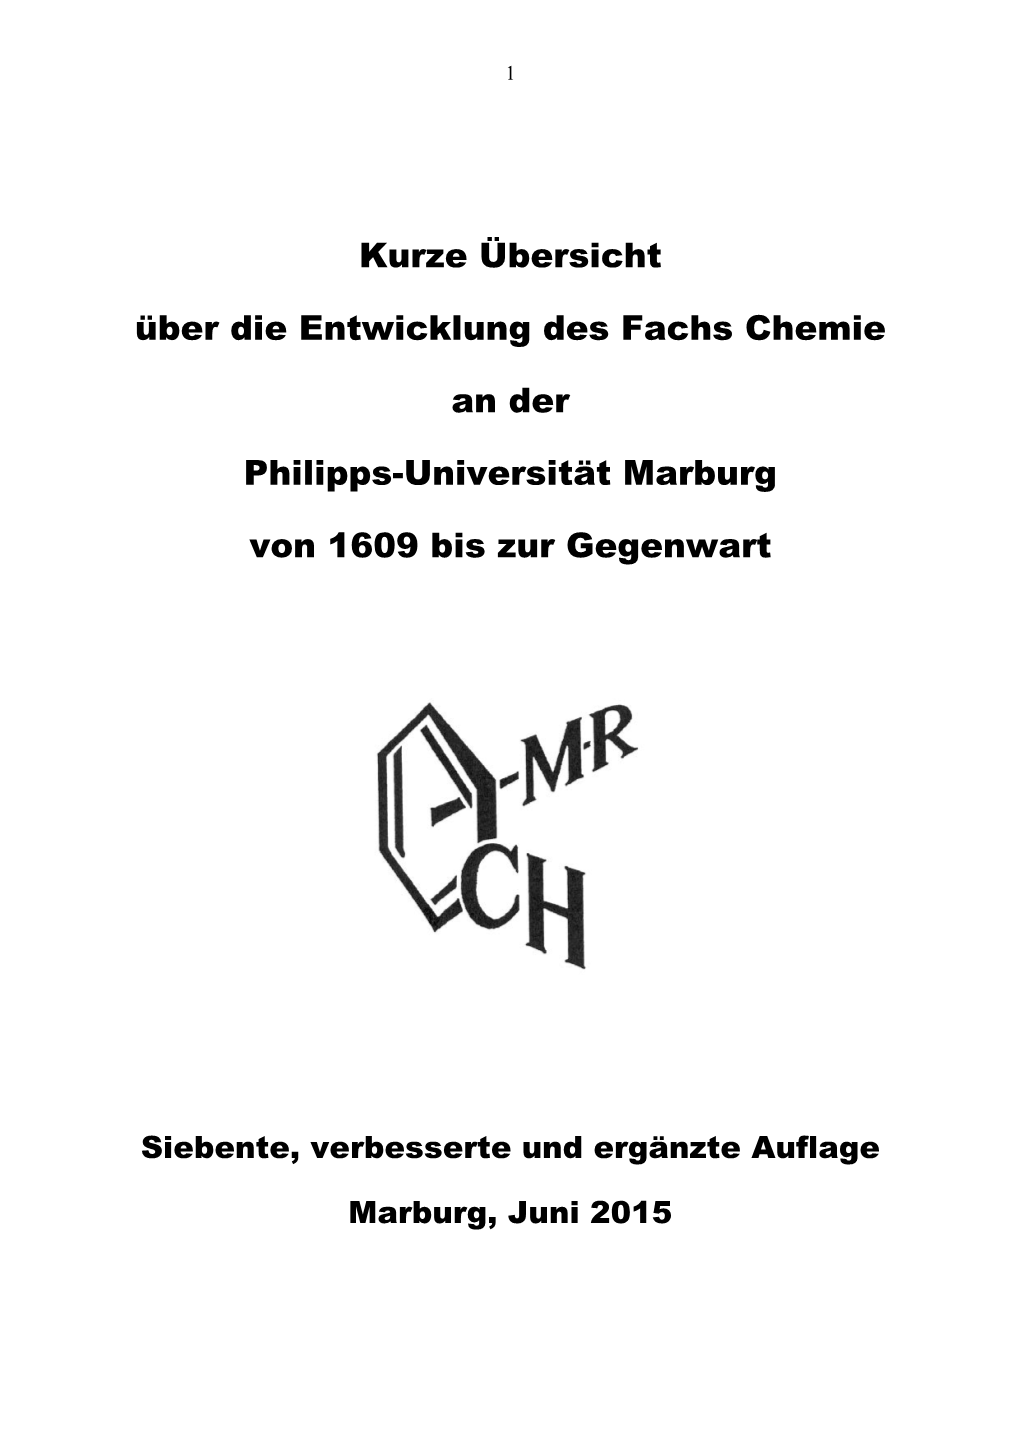 Kurze Übersicht Über Die Entwicklung Des Fachs Chemie an Der Philipps-Universität Marburg Von 1609 Bis Zur Gegenwart